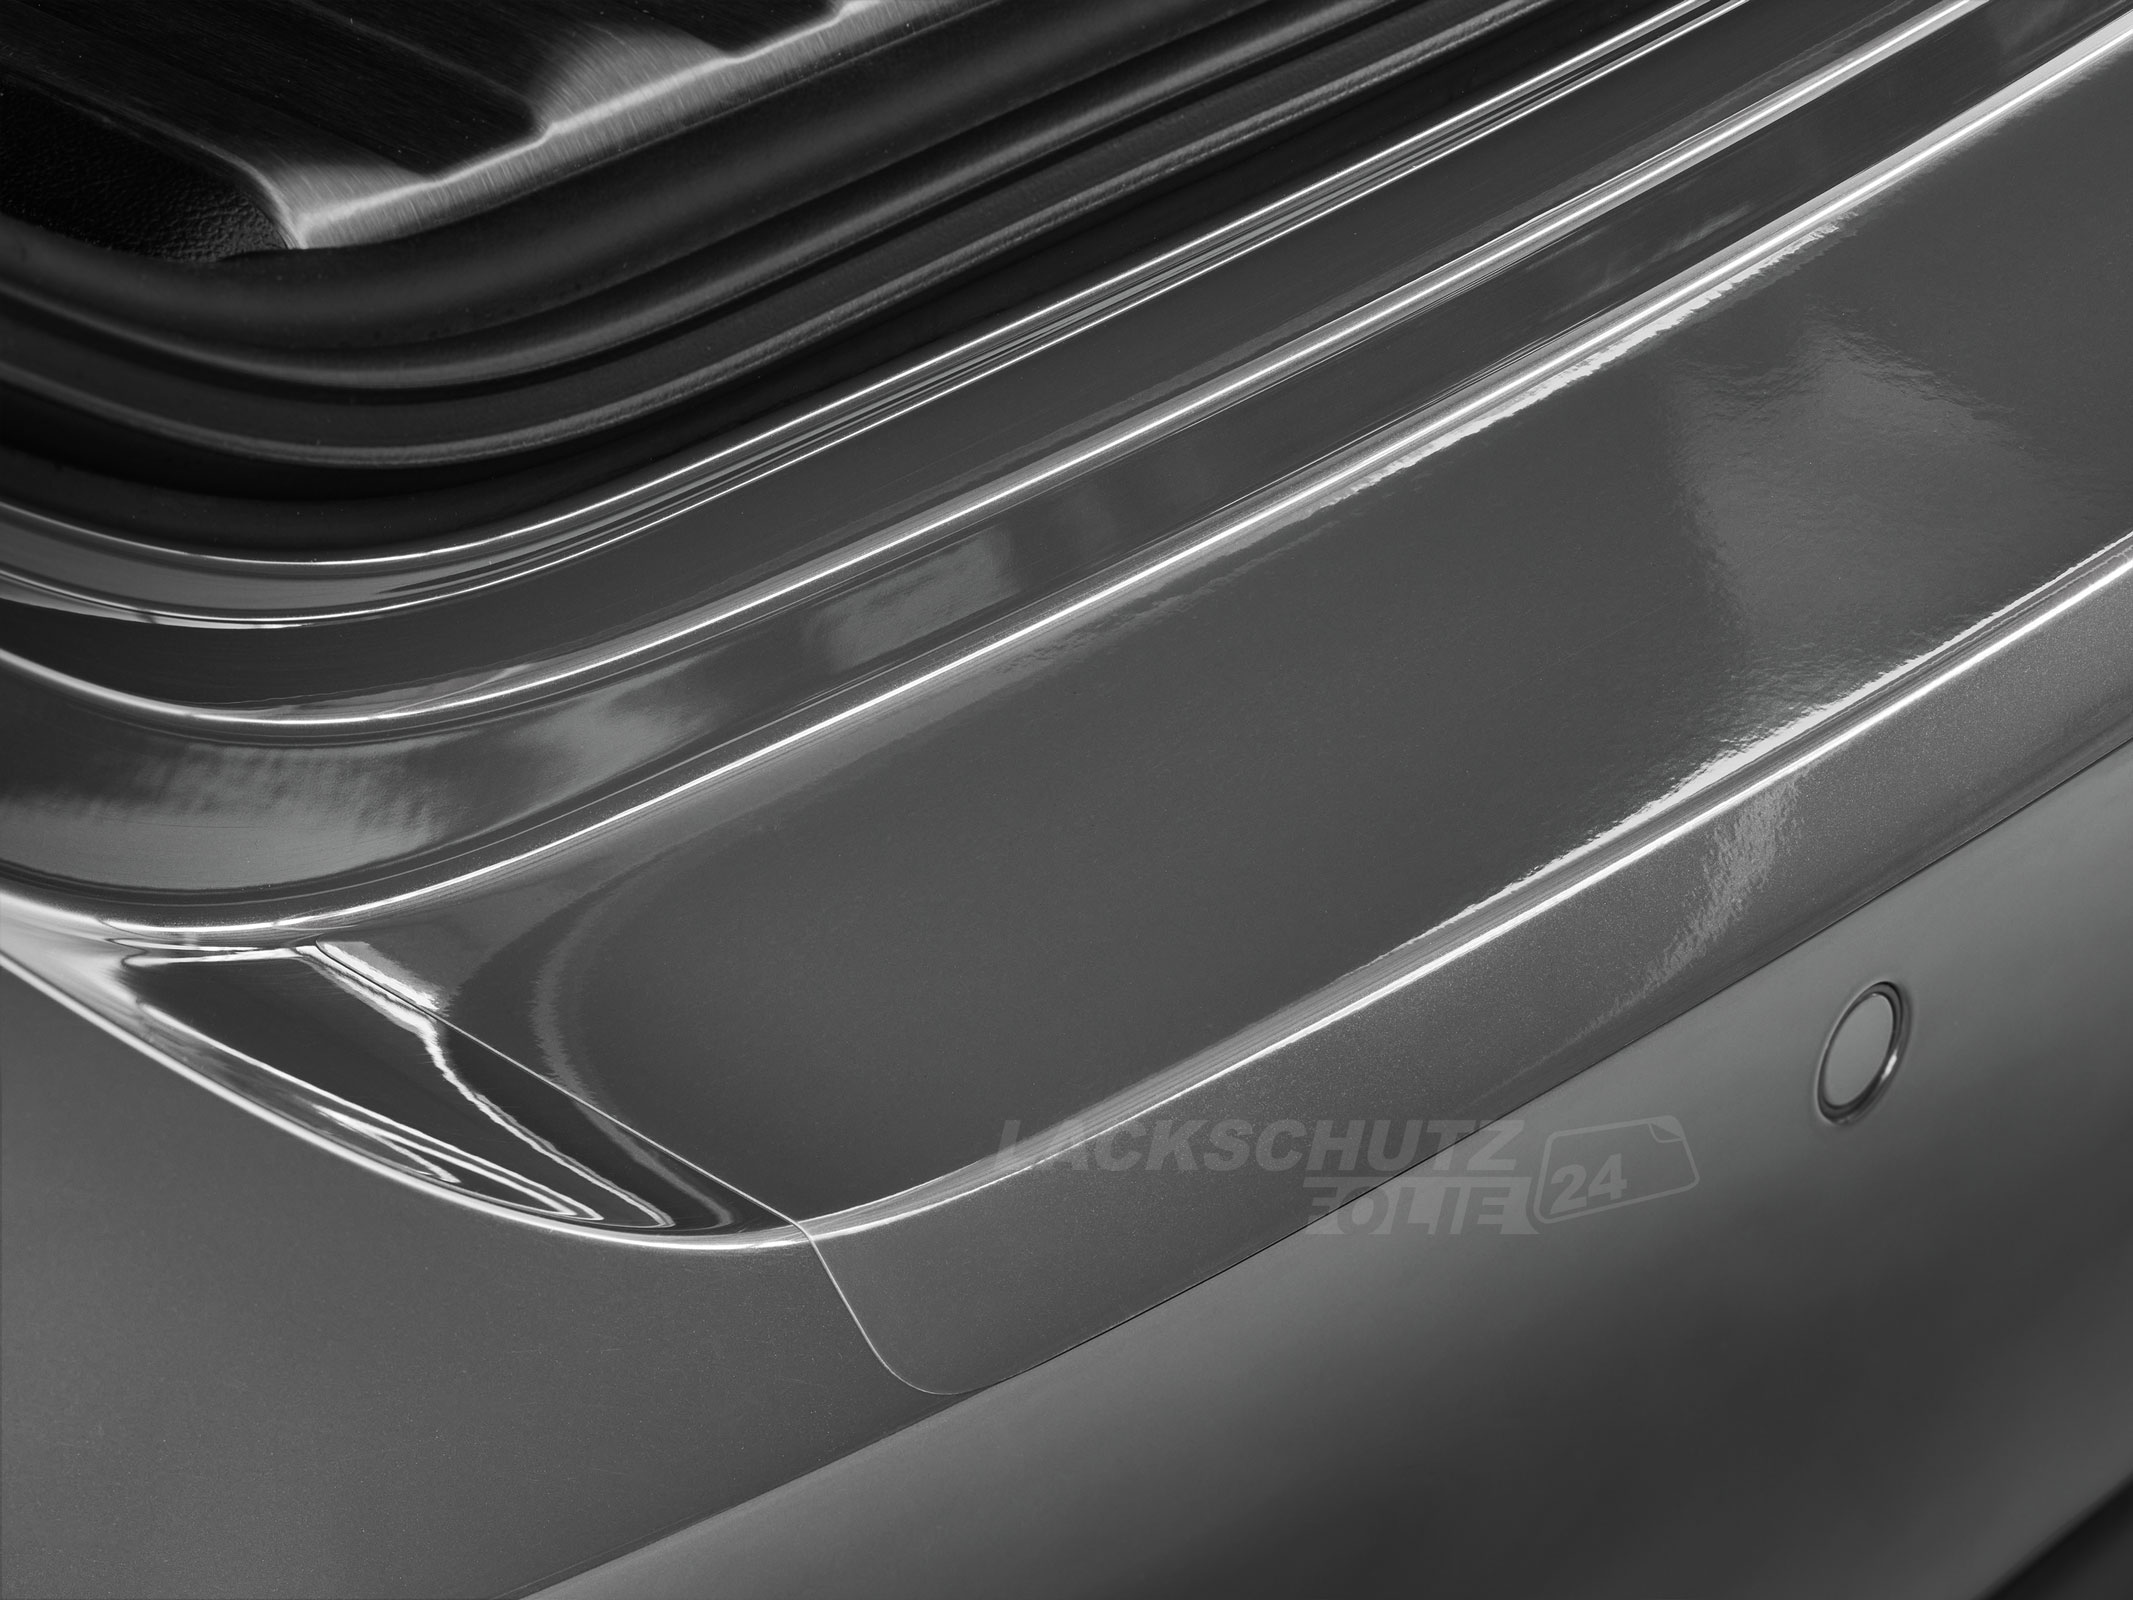 Ladekantenschutzfolie - Transparent Glatt Hochglänzend 240 µm stark für VW / Volkswagen CC ab BJ 2012